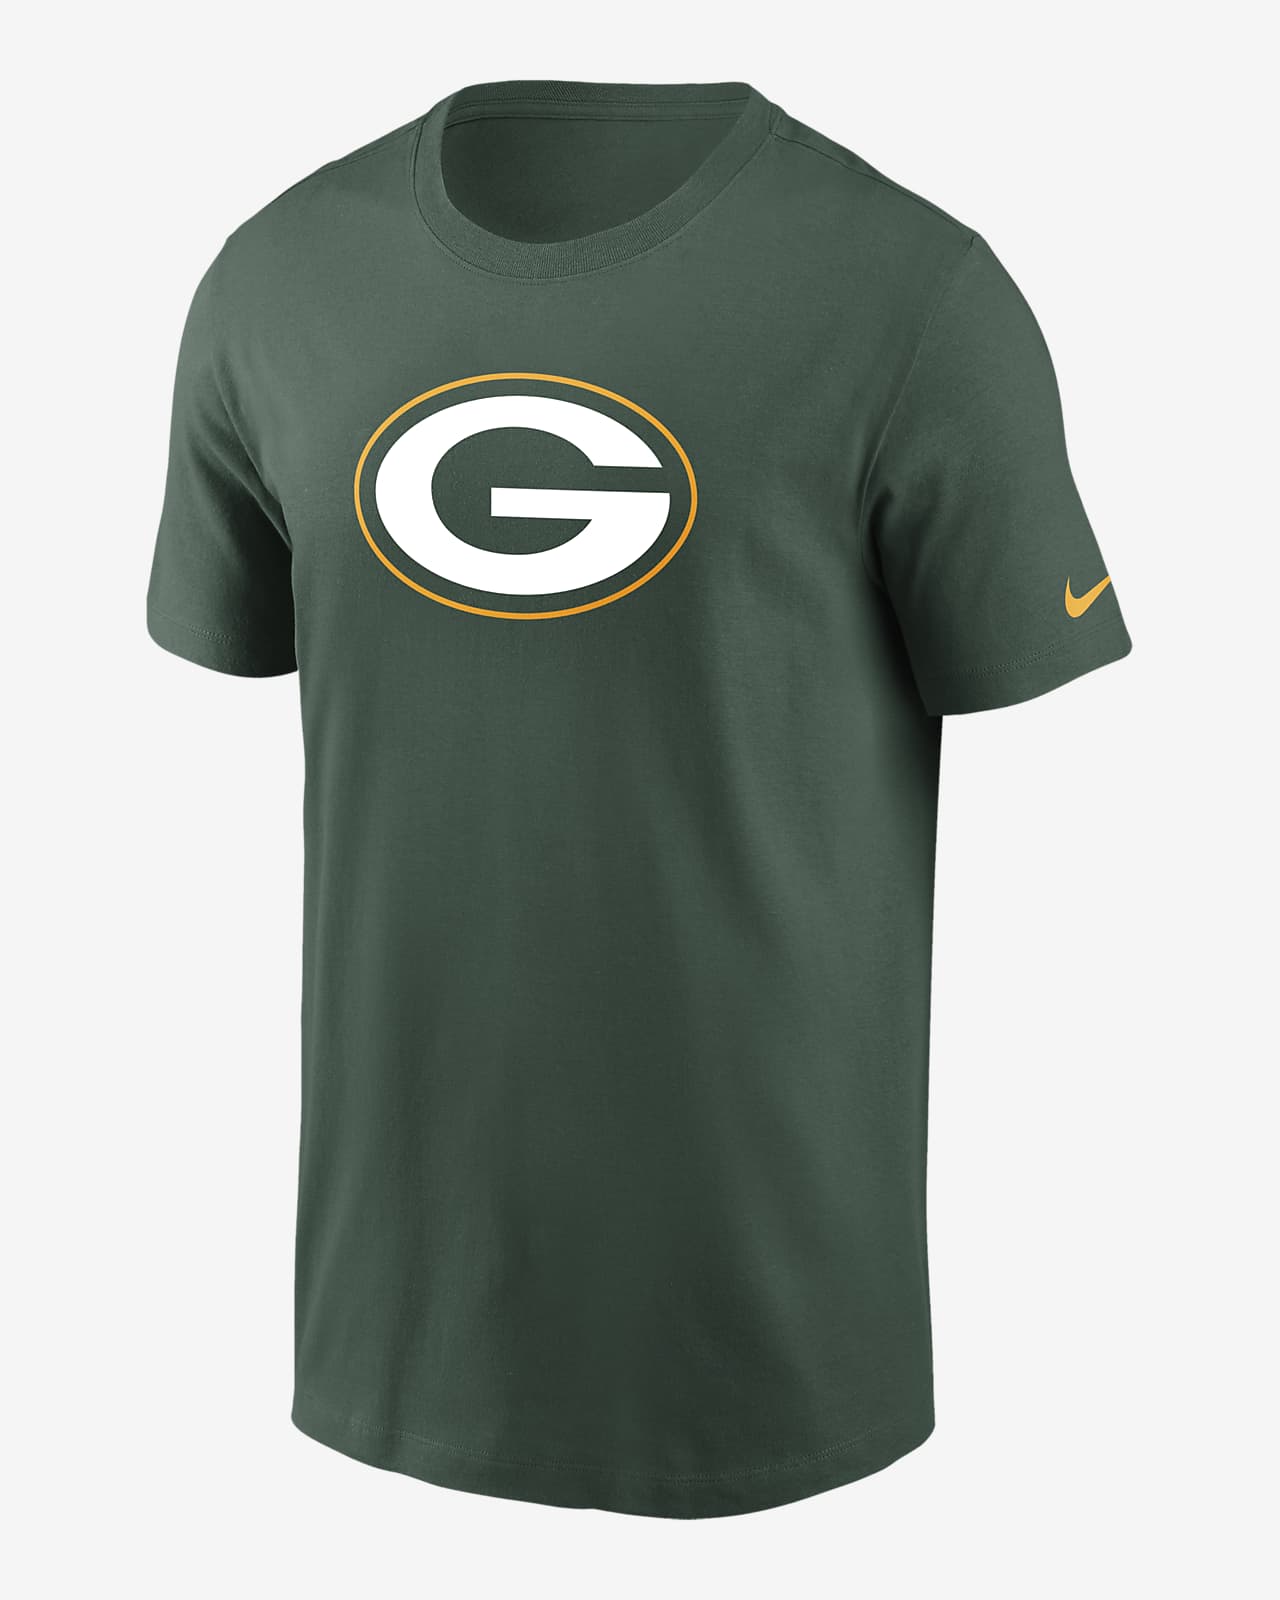 T-shirt dla dużych dzieci (chłopców) z logo Nike Essential (NFL Green bay Packers)